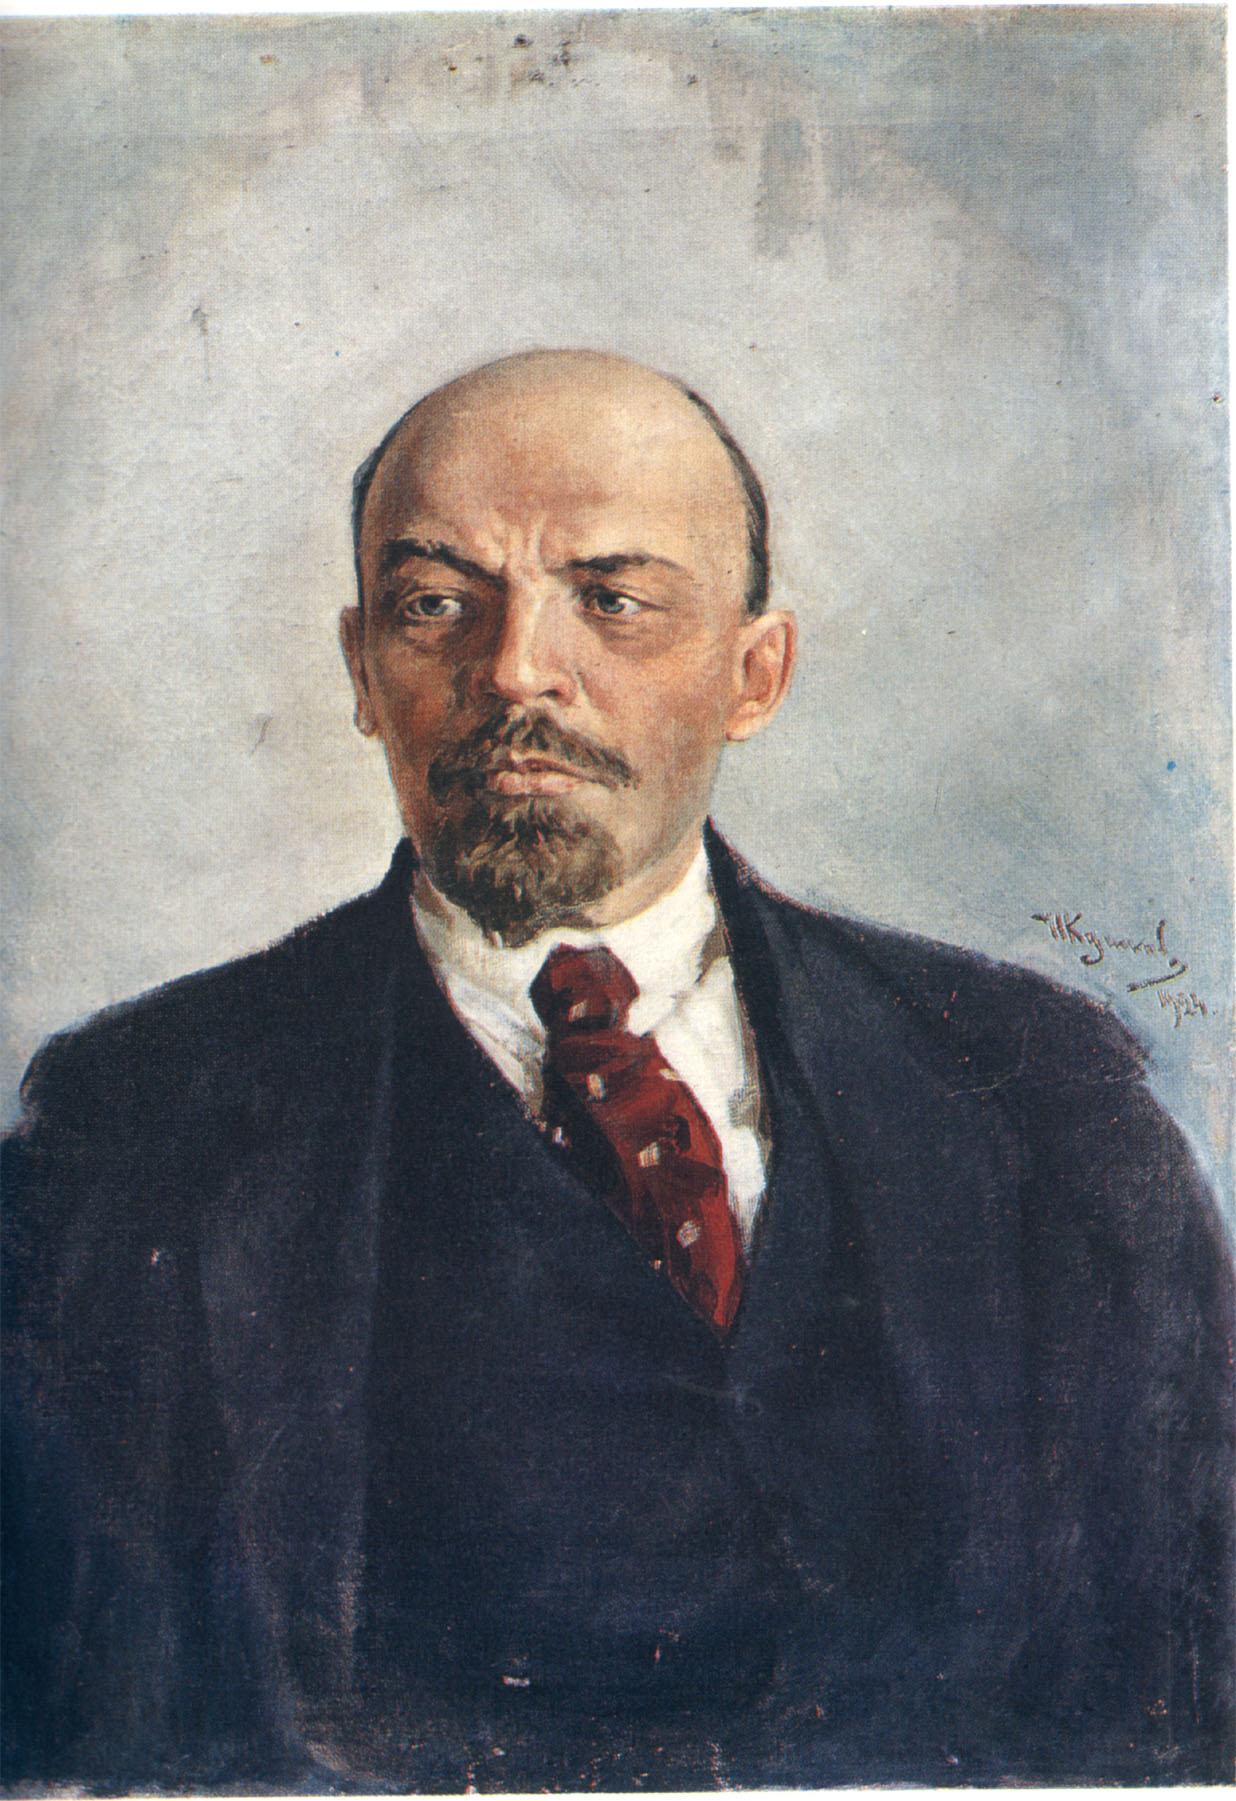 Vladimir Lenin Wallpaper Background Image Hippowallpaper